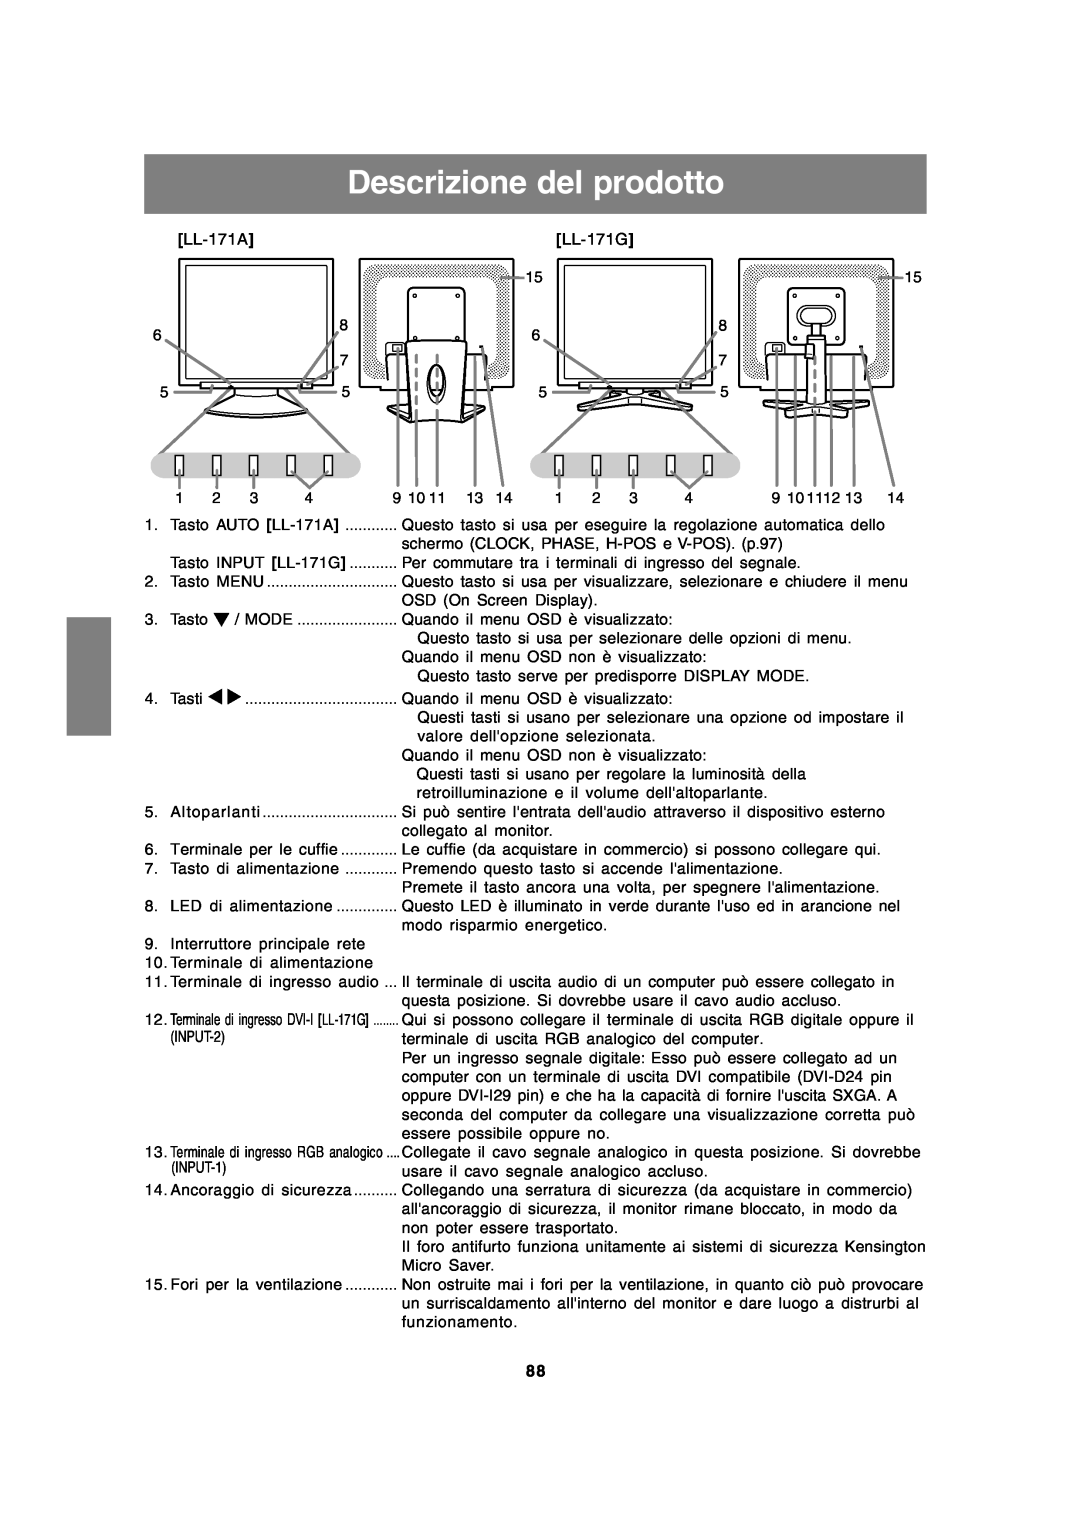 Sharp LL-171A LL-171G operation manual Descrizione del prodotto 